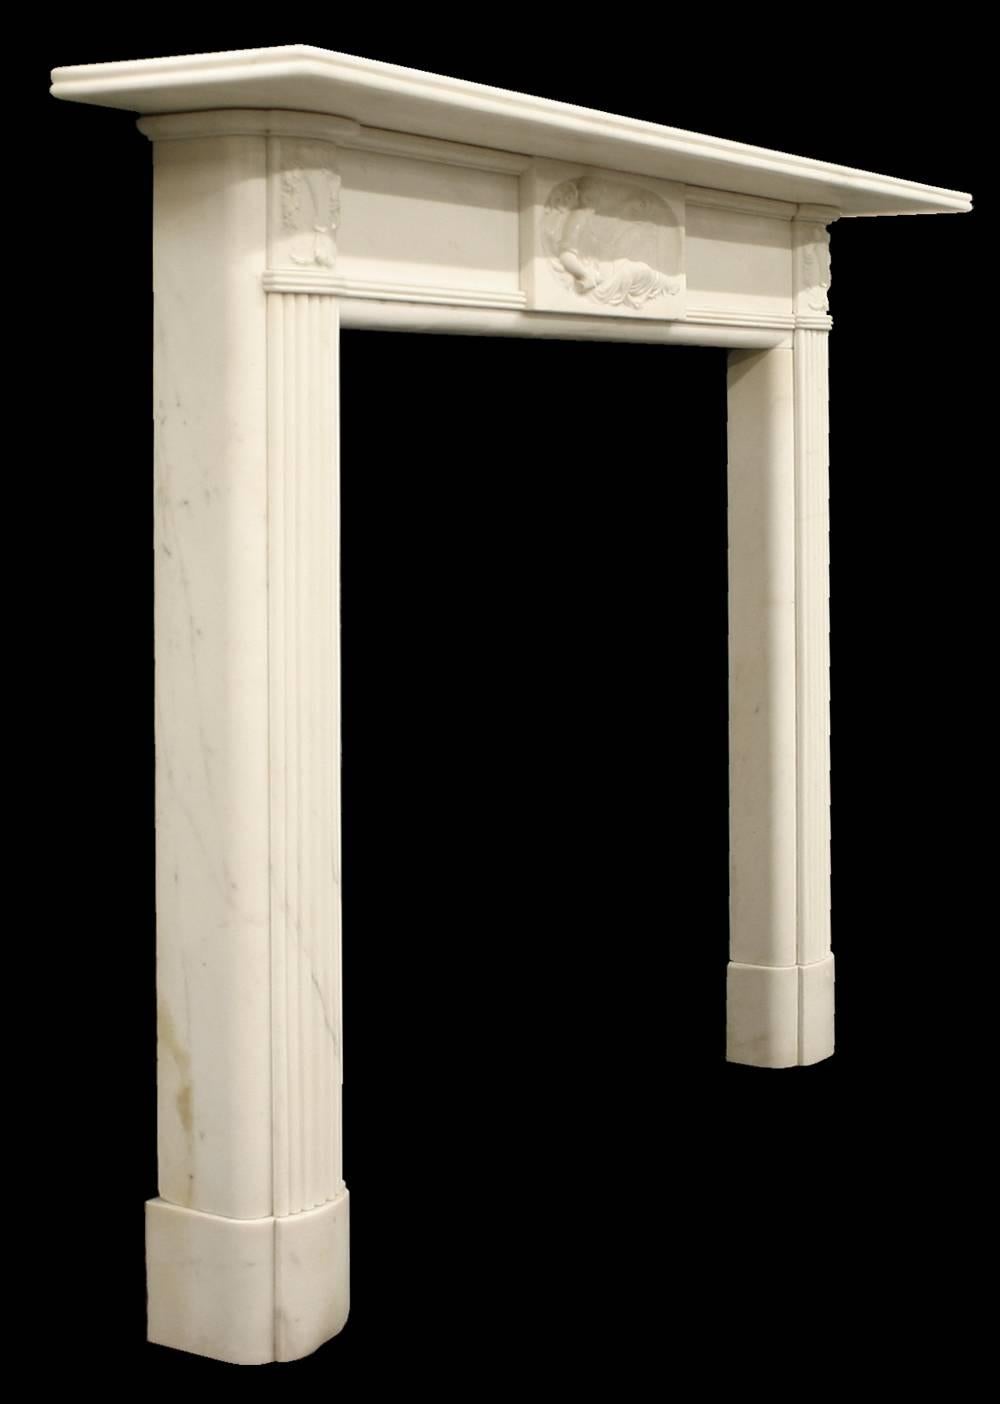 Feine und gut ausgeführte antike georgianische statuarische Kamineinfassung aus weißem Marmor. Die schilfbewehrten und geschwungenen Beinflächen sitzen auf geschwungenen Sockeln und enden in fein geschnitzten Kapitellen, die eine mit Früchten und